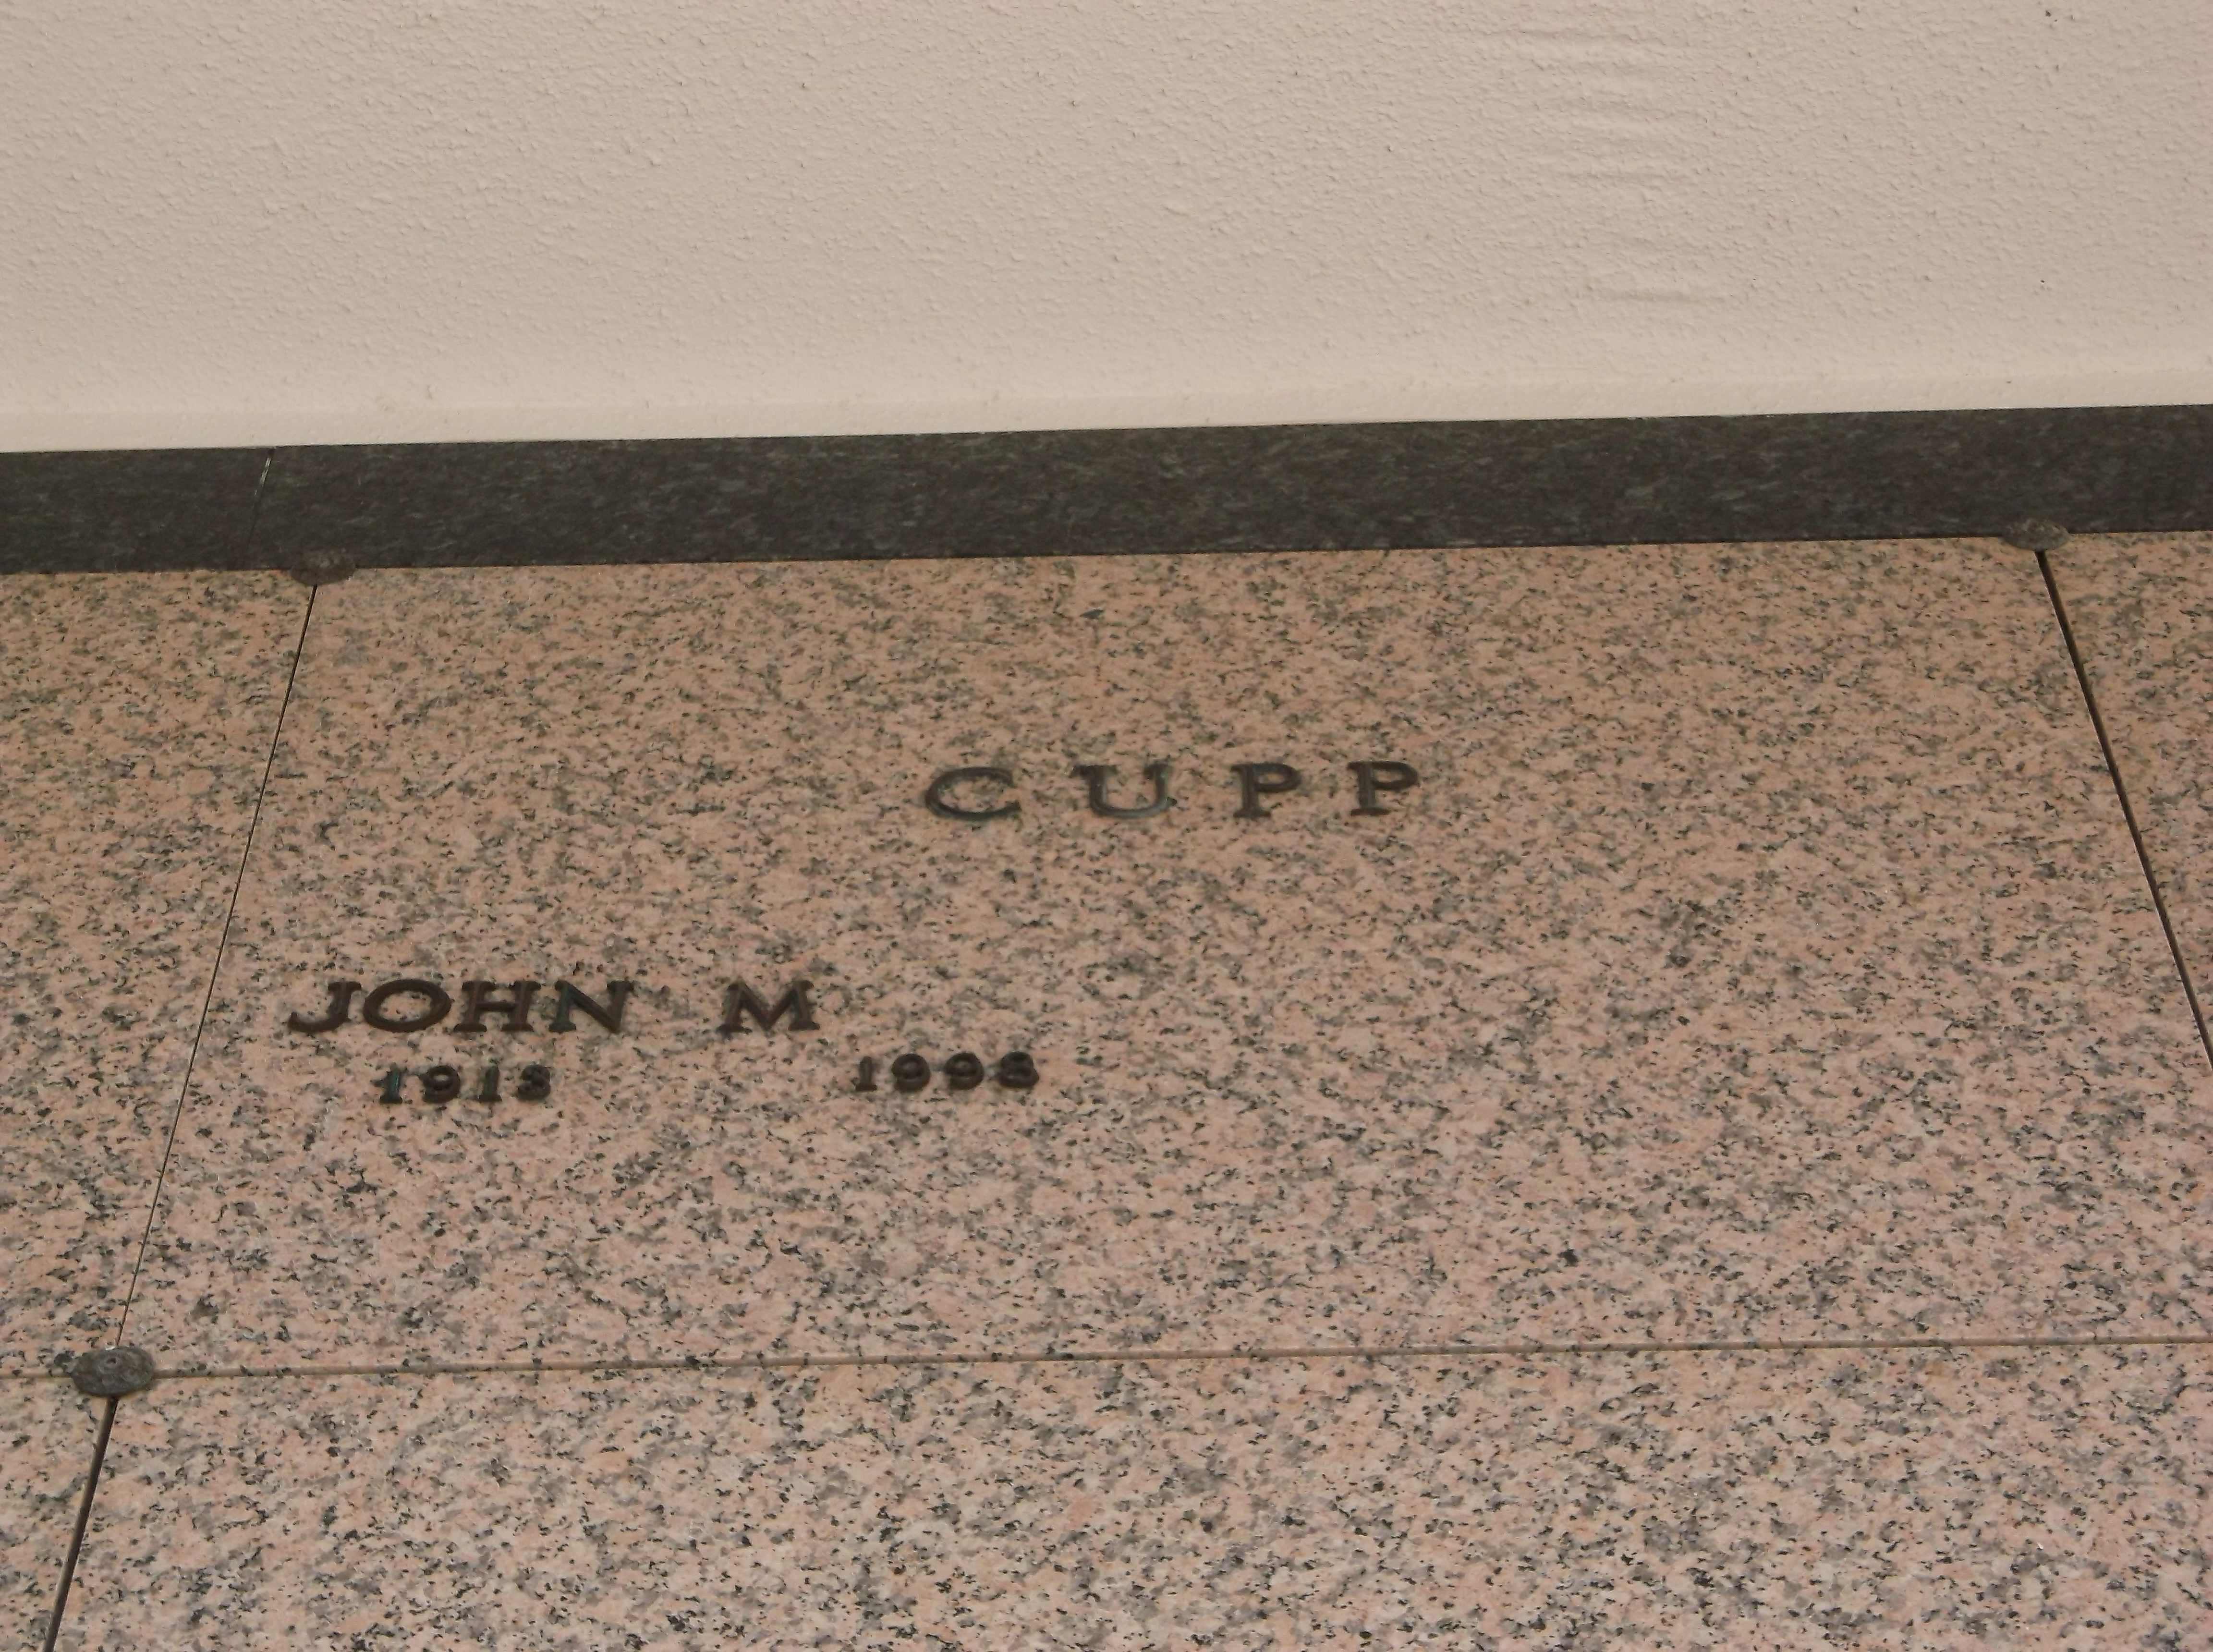 John M Cupp